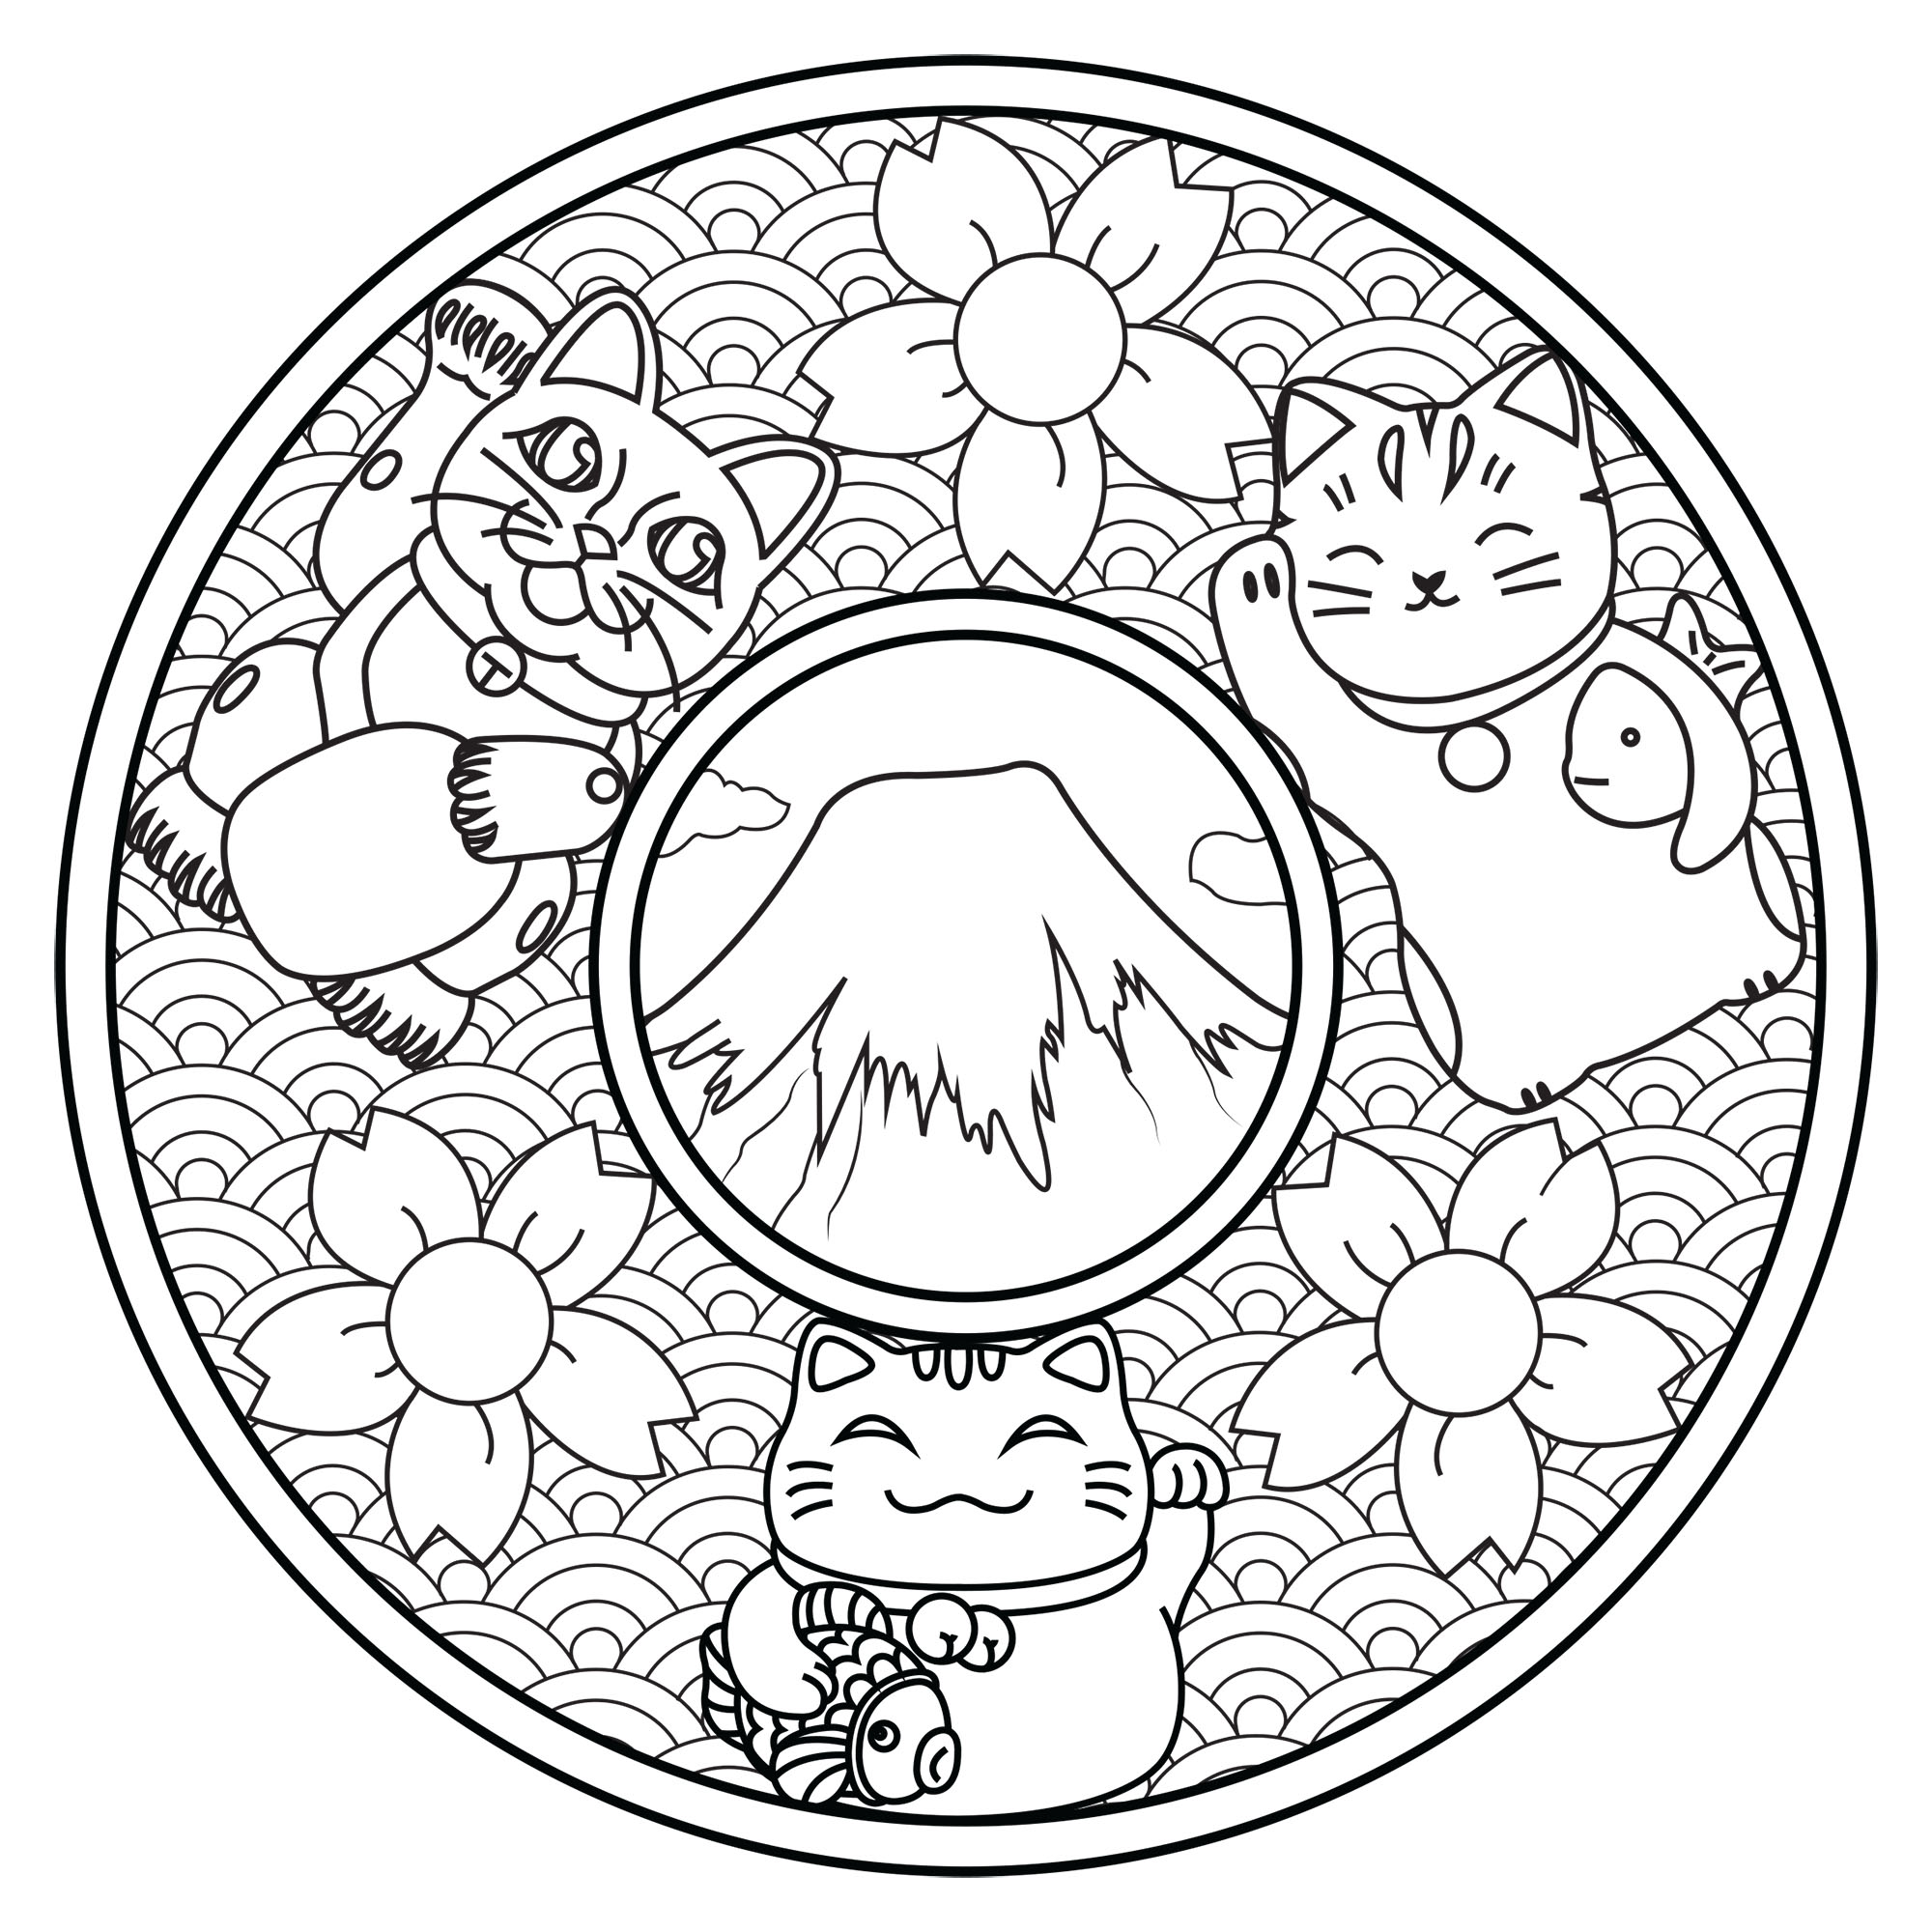 Pinte estes três gatos muito giros nesta Mandala inspirada no Japão: Monte Fuji, flores de cerejeira, ondas .., Artista : Lucie